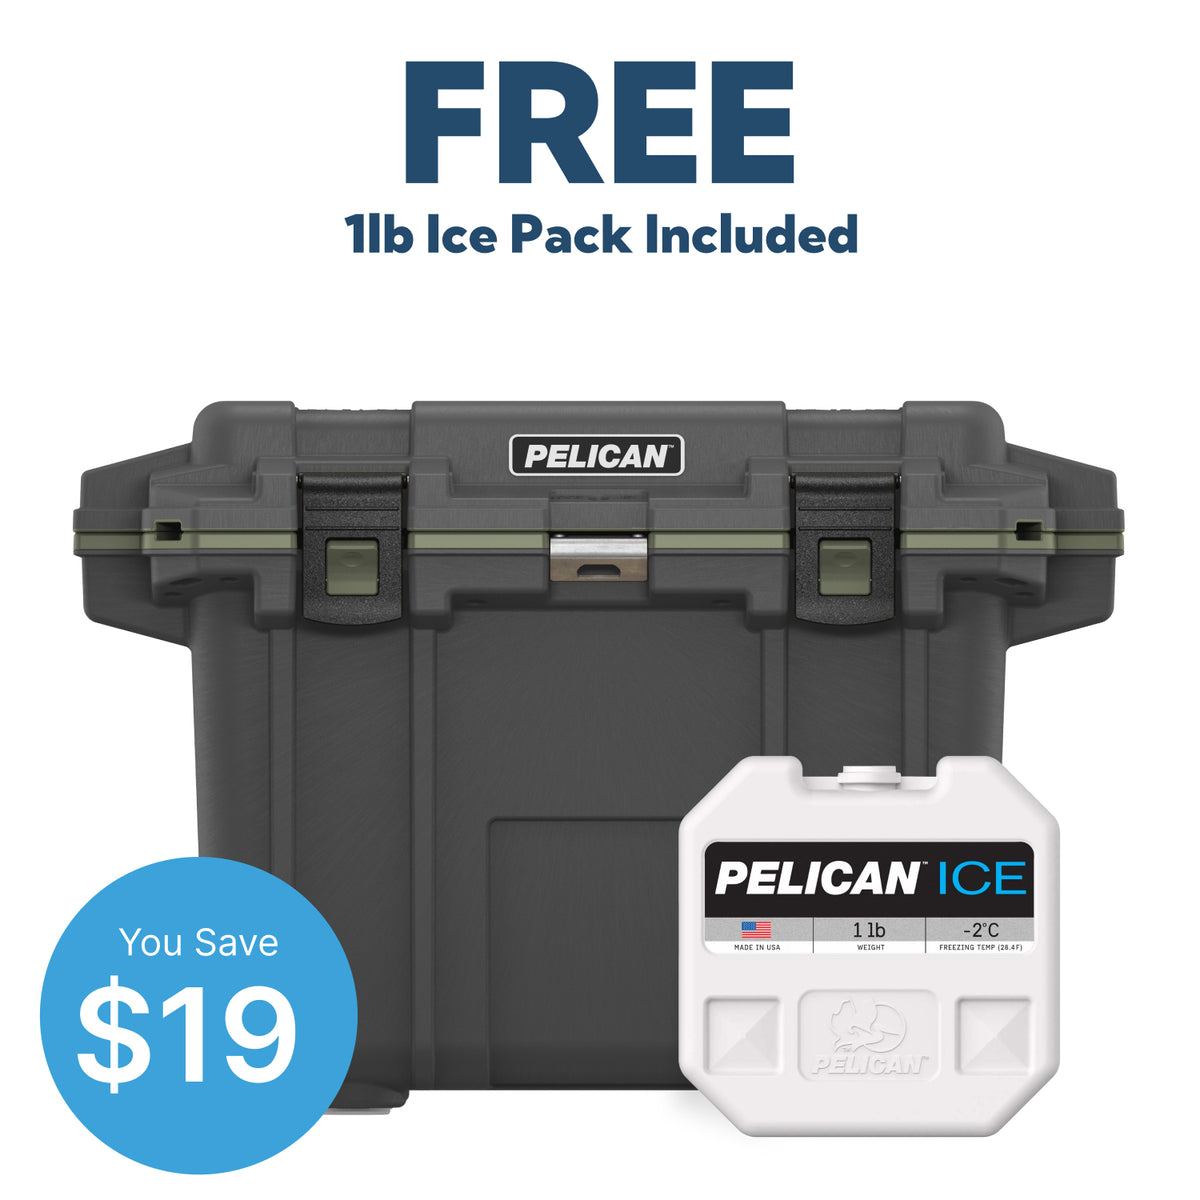 Gumetal / OD Green Pelican 50QT Elite Cooler &amp; Free 1lb Pelican Ice Pack